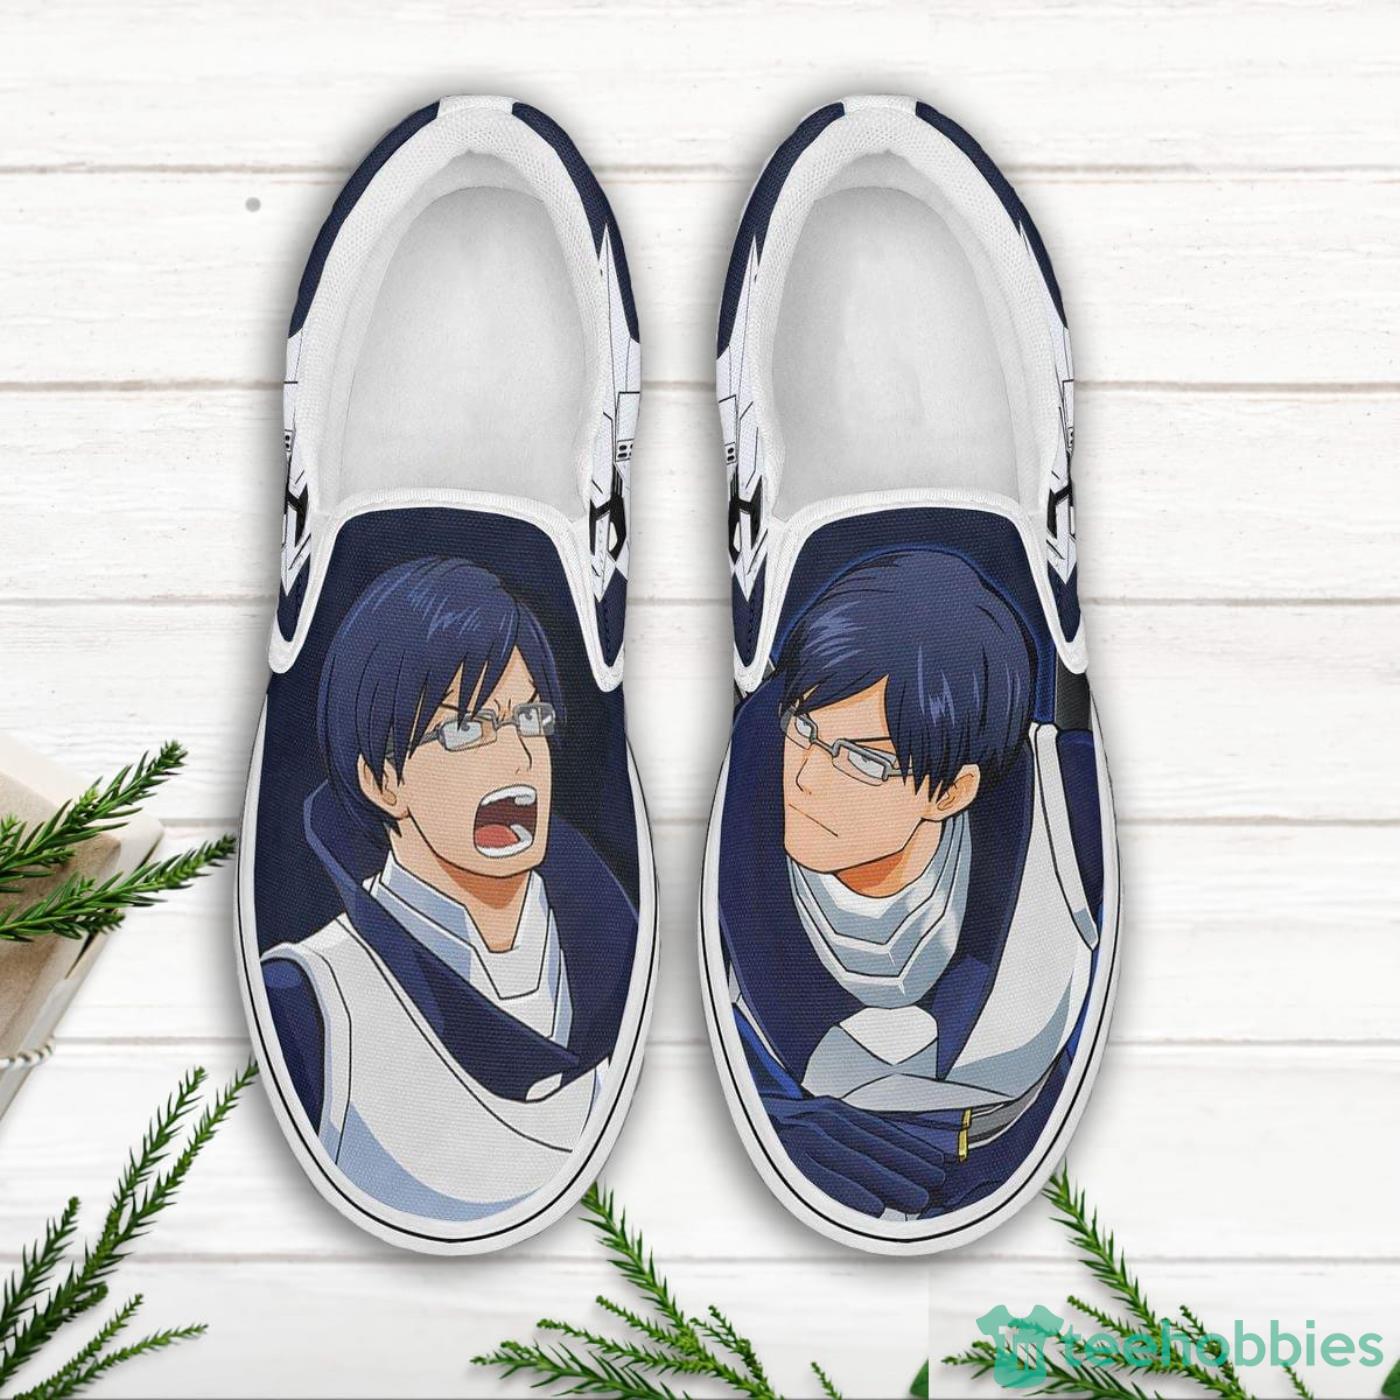 Tenya Iida My Hero Academia Anime Nike Air Force Sneaker Shoes • Kybershop